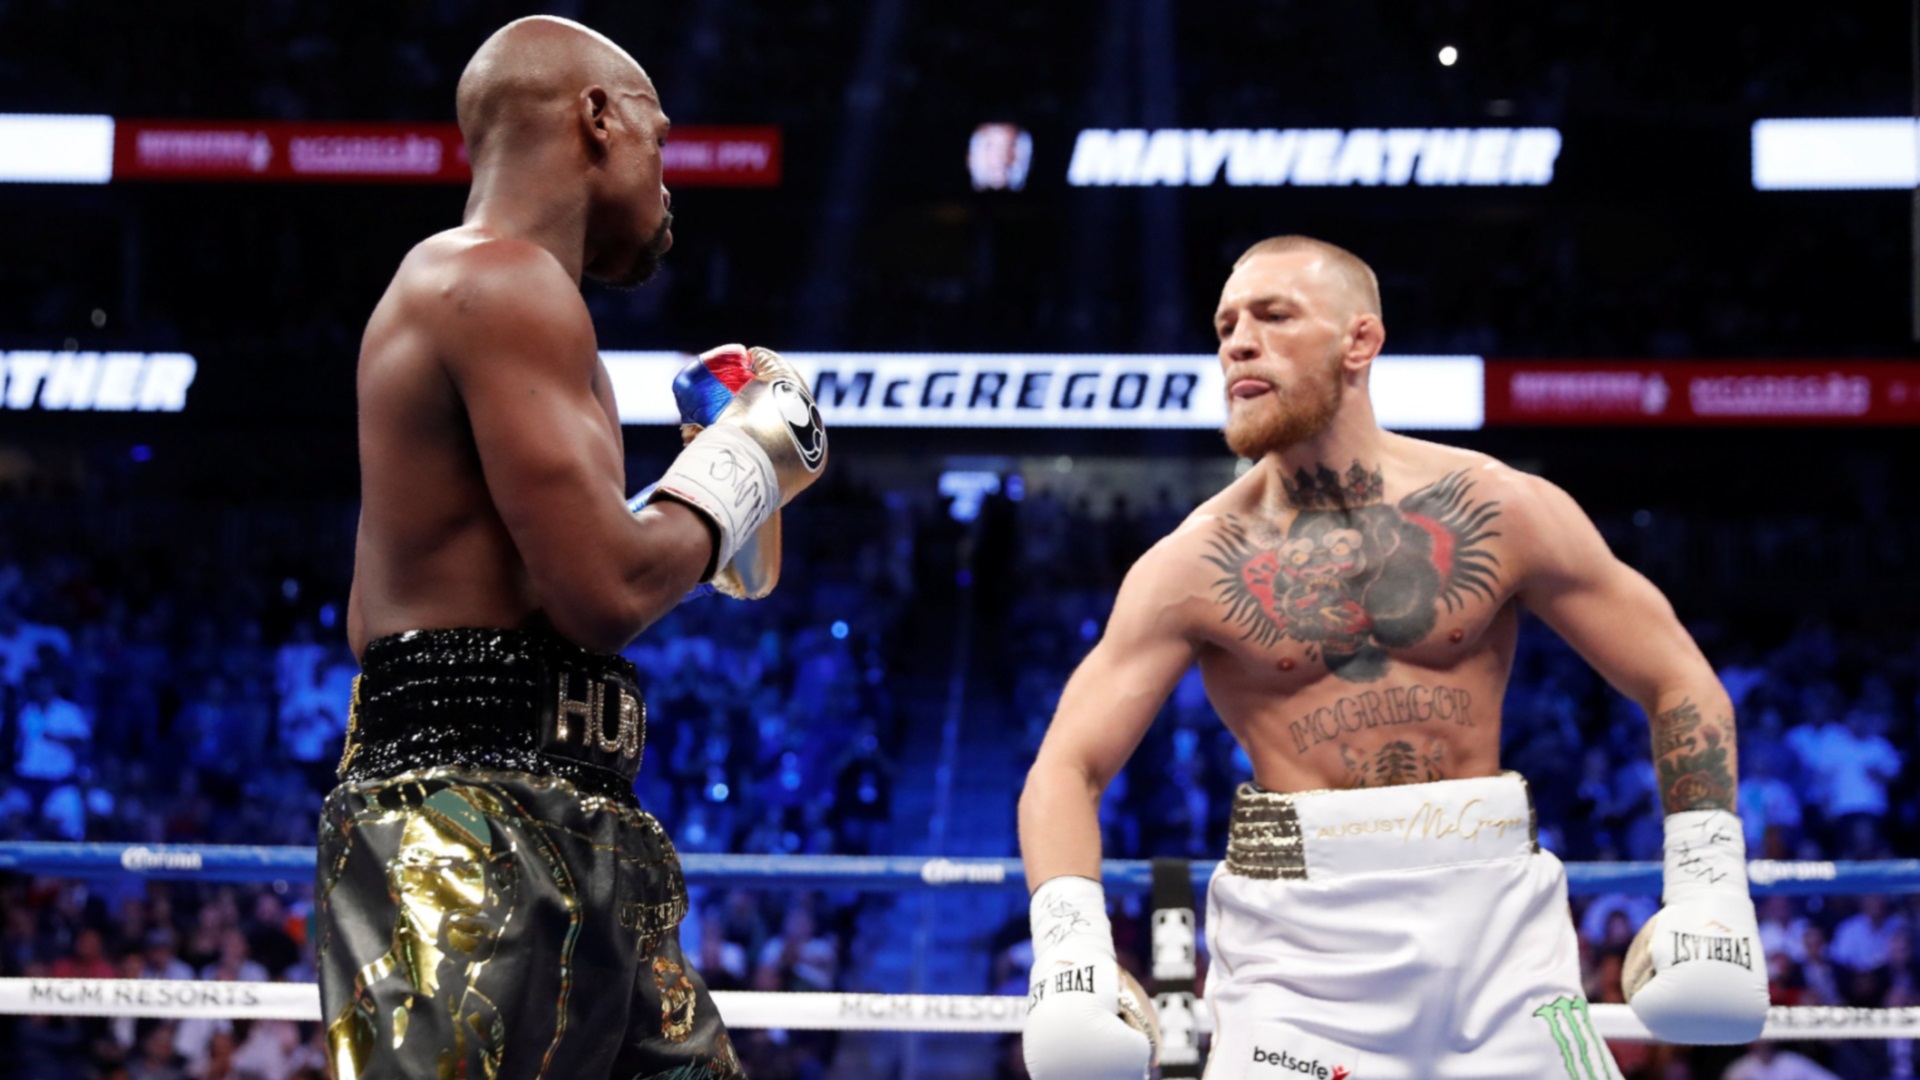 La pelea de Mayweather con McGregor fue un éxito de PPV, pero lejos estuvo de ser un combate atractivo desde lo boxístico (Foto: Reuters)